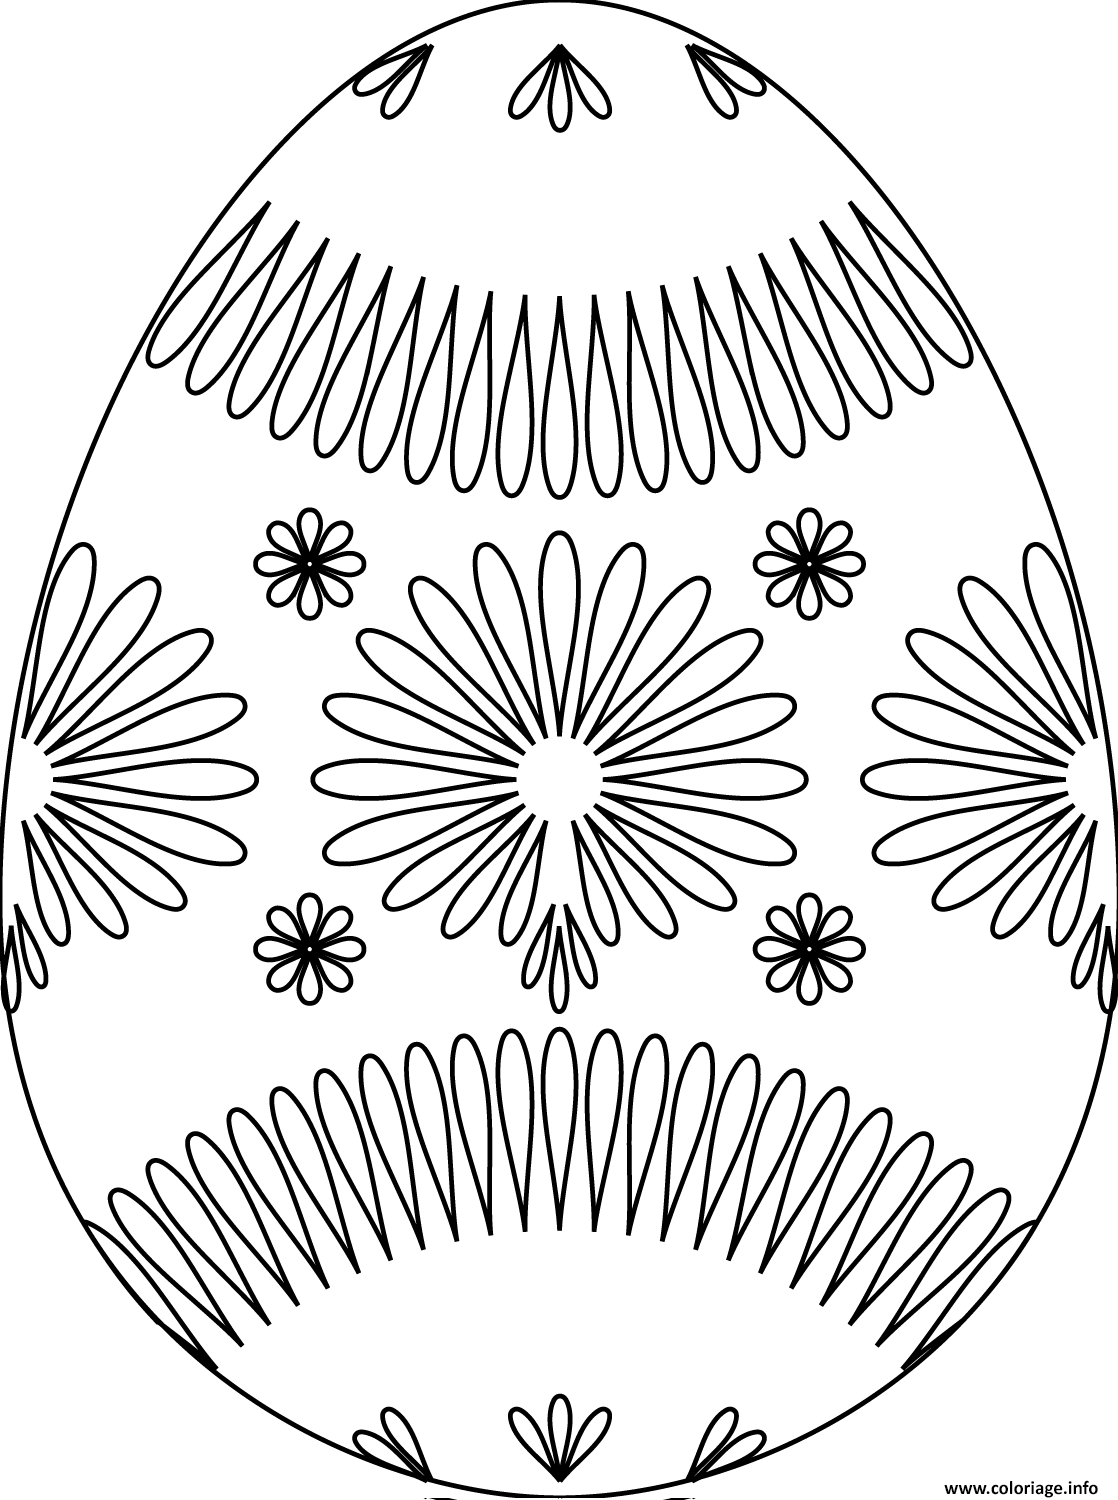 Dessin oeuf de paques avec flower pattern Coloriage Gratuit à Imprimer